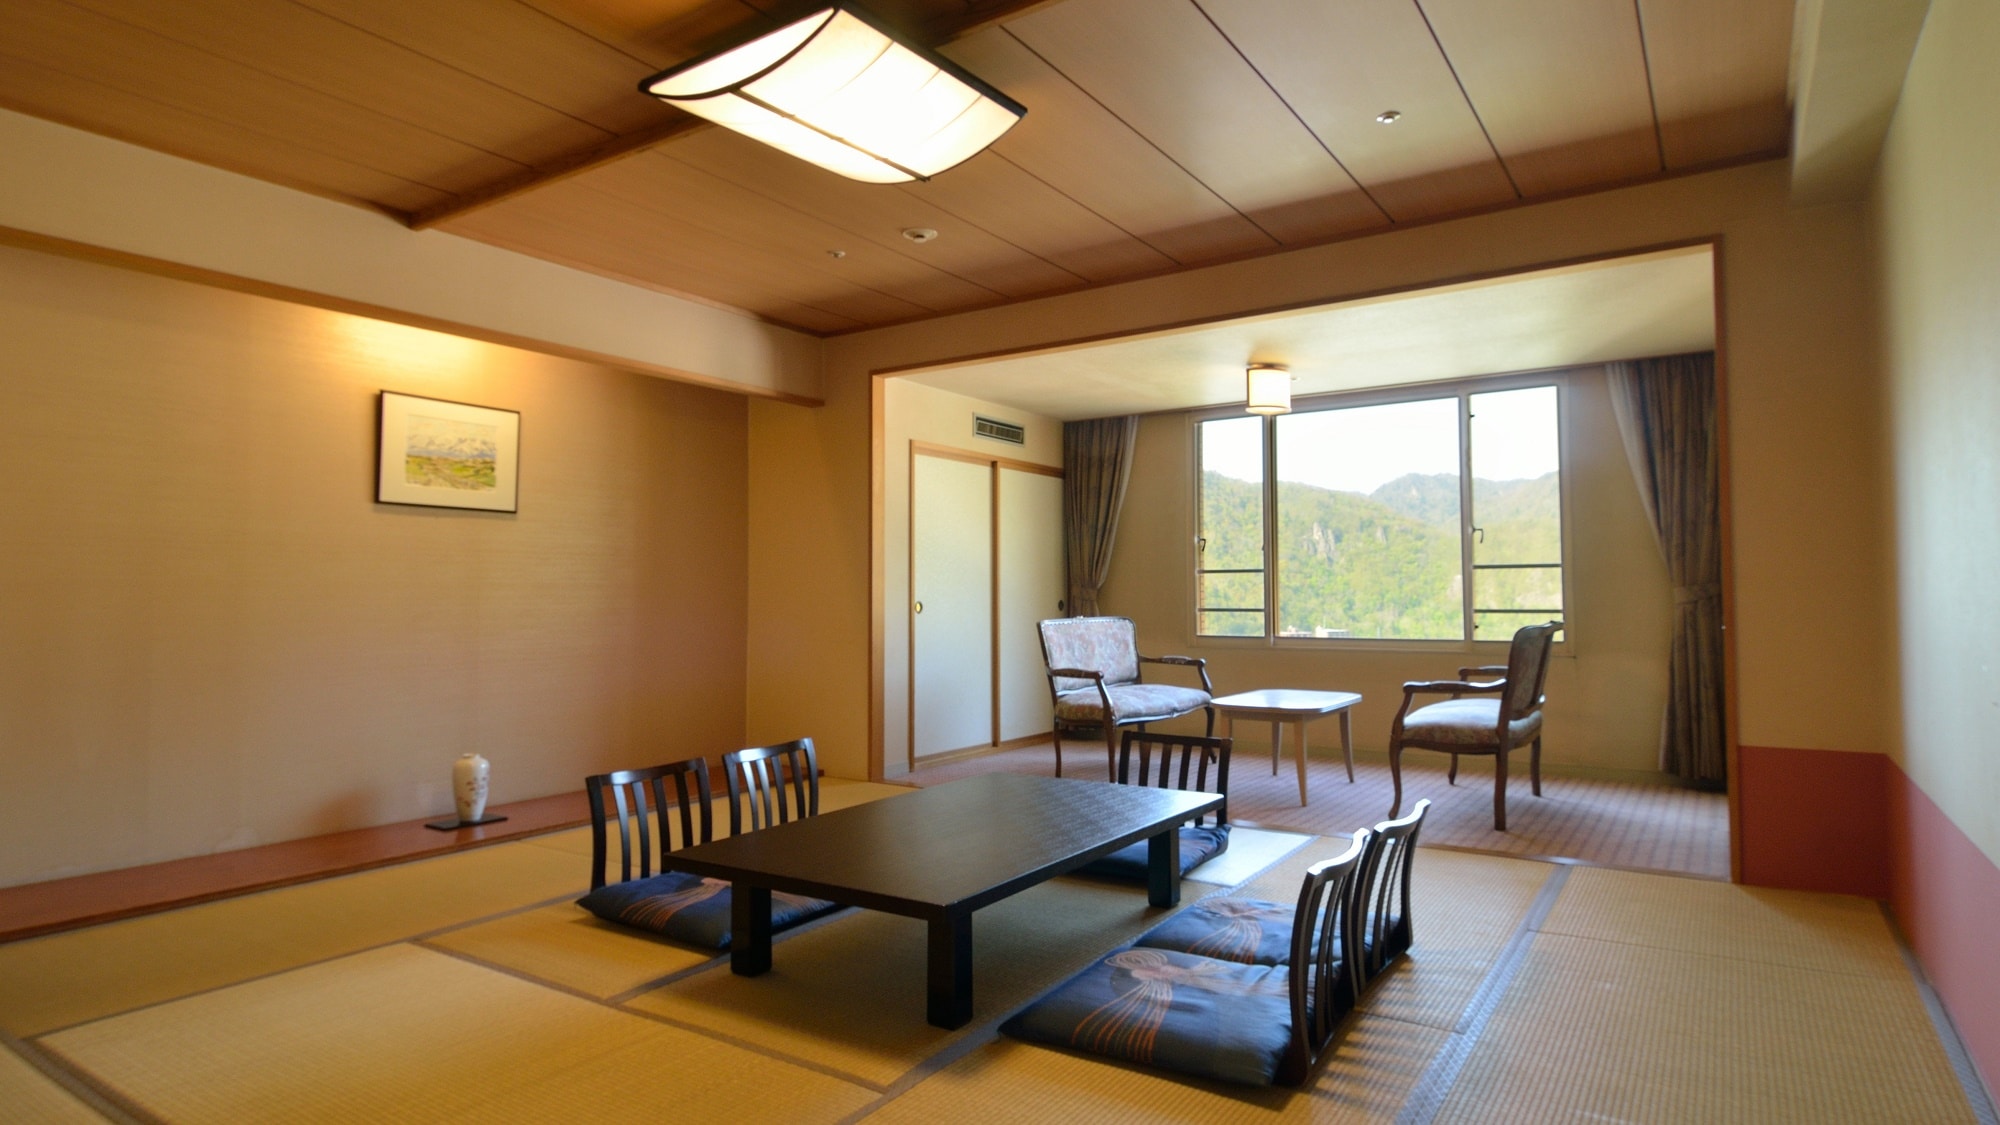 【일본식 방 12 다다미】 어른수로의 숙박에. 공간의 넓이로 대화도 탄다. 모두로 베개를 나란히 자는 밤은 각별한 추억에.